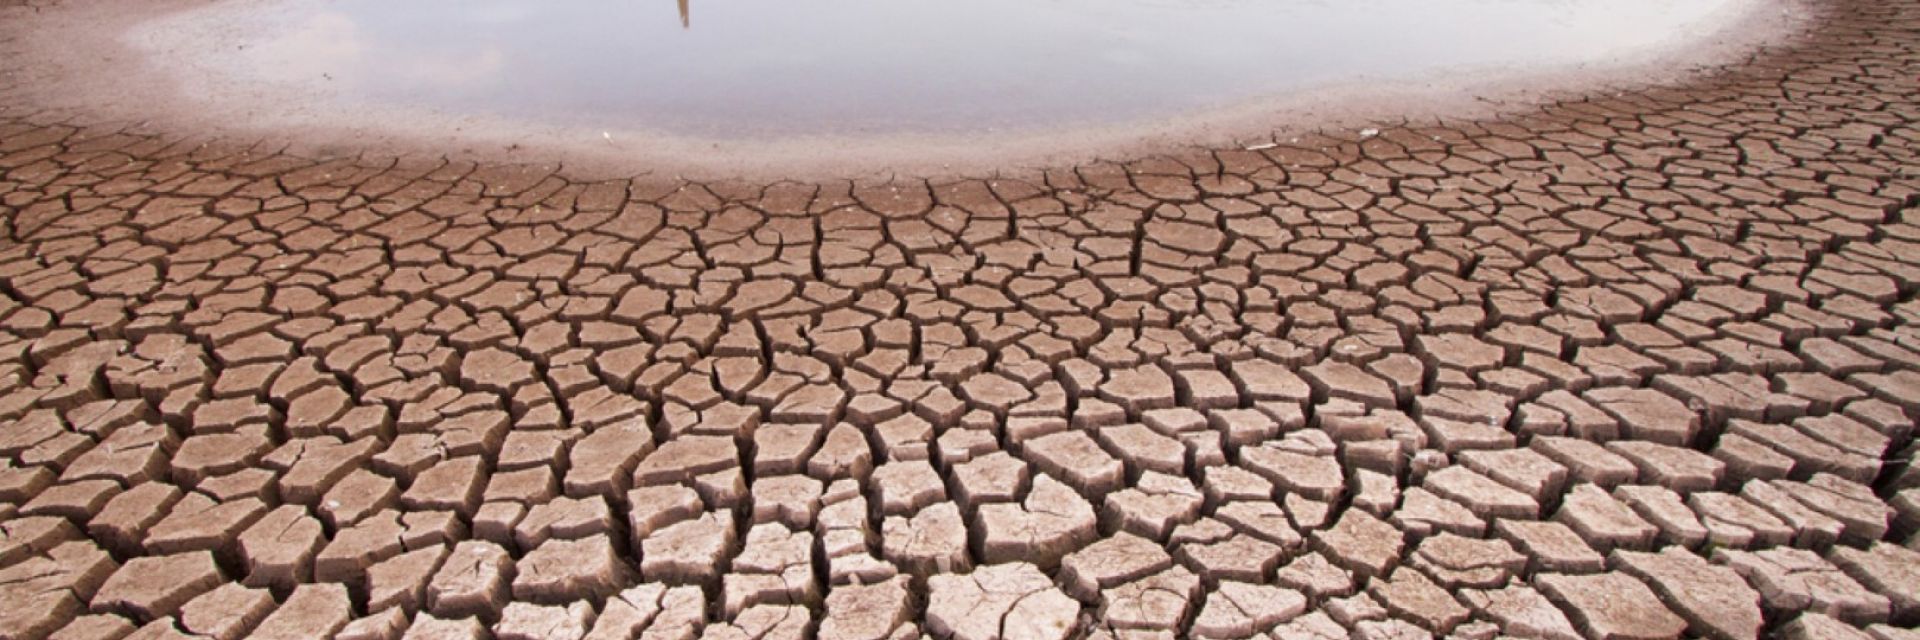 Недостигът на вода - основен проблем през 21 век